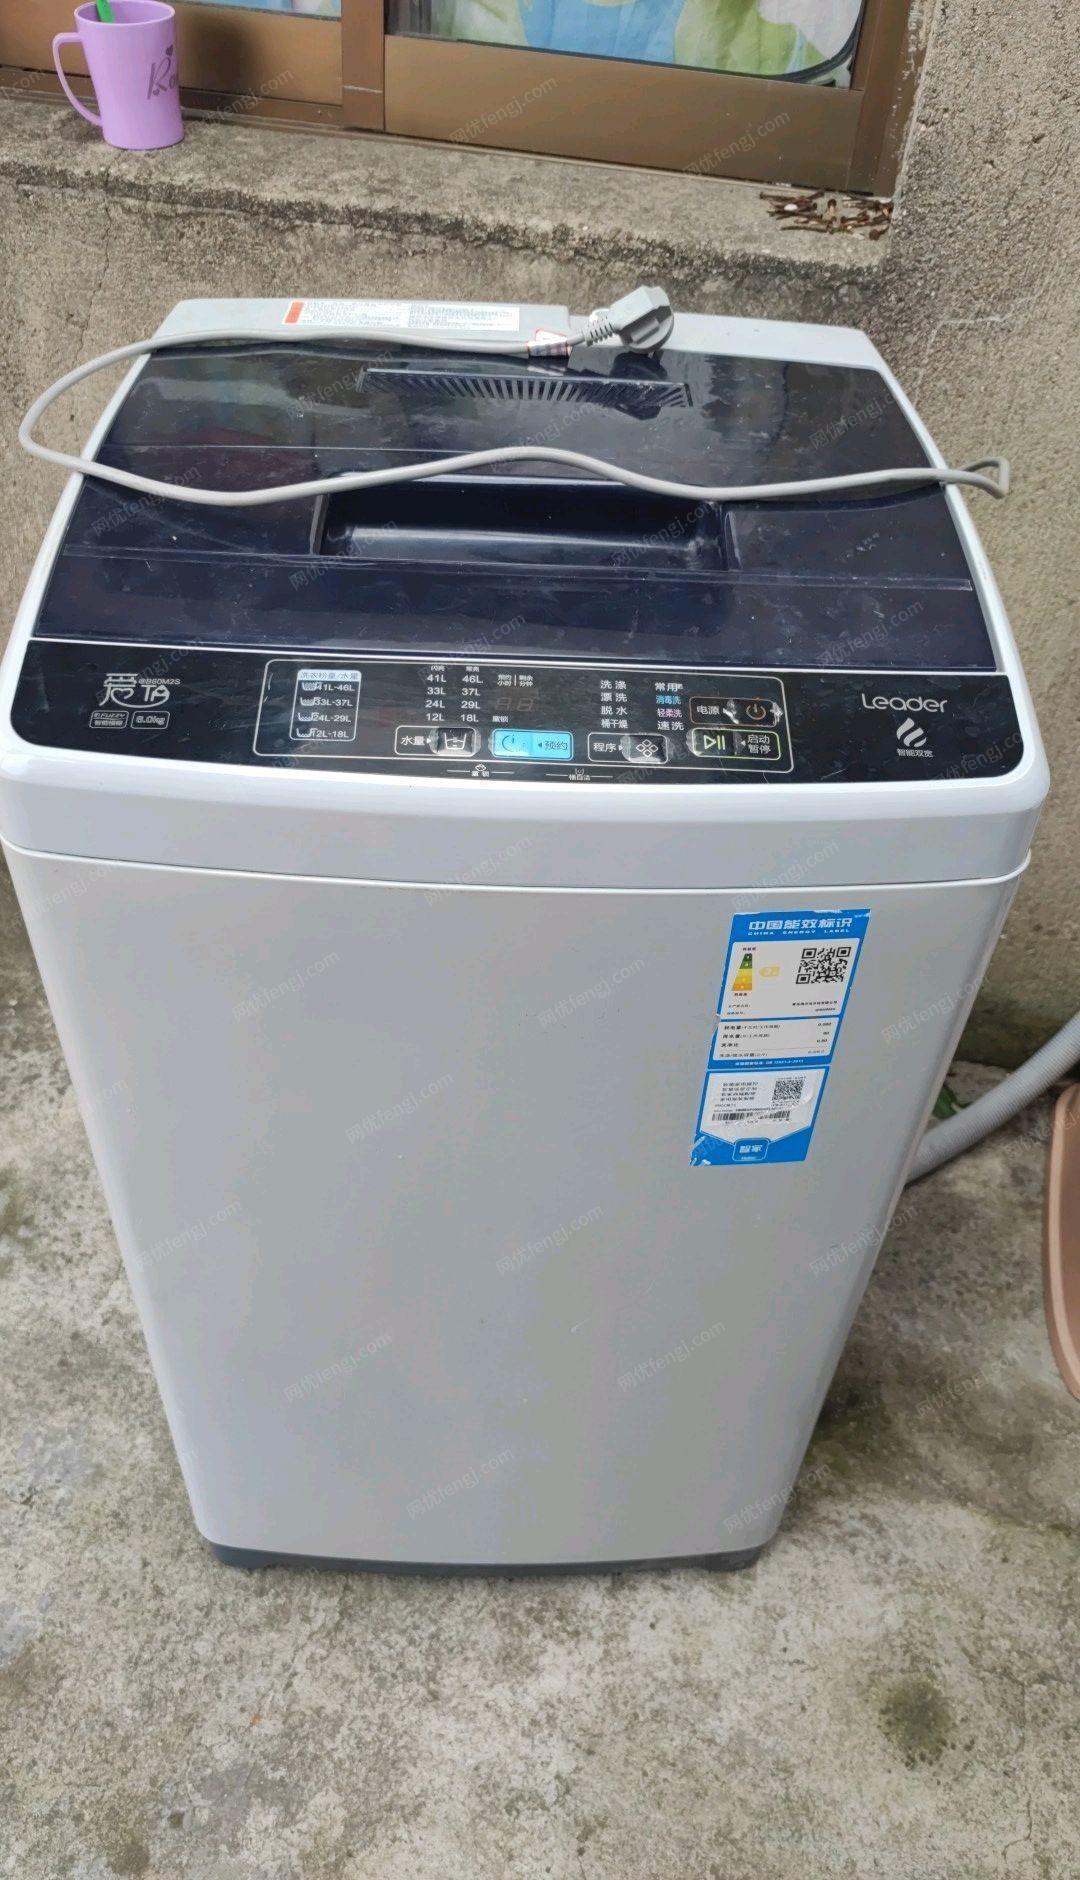 安徽宣城个人自用海尔统帅6.0公斤洗衣机出售